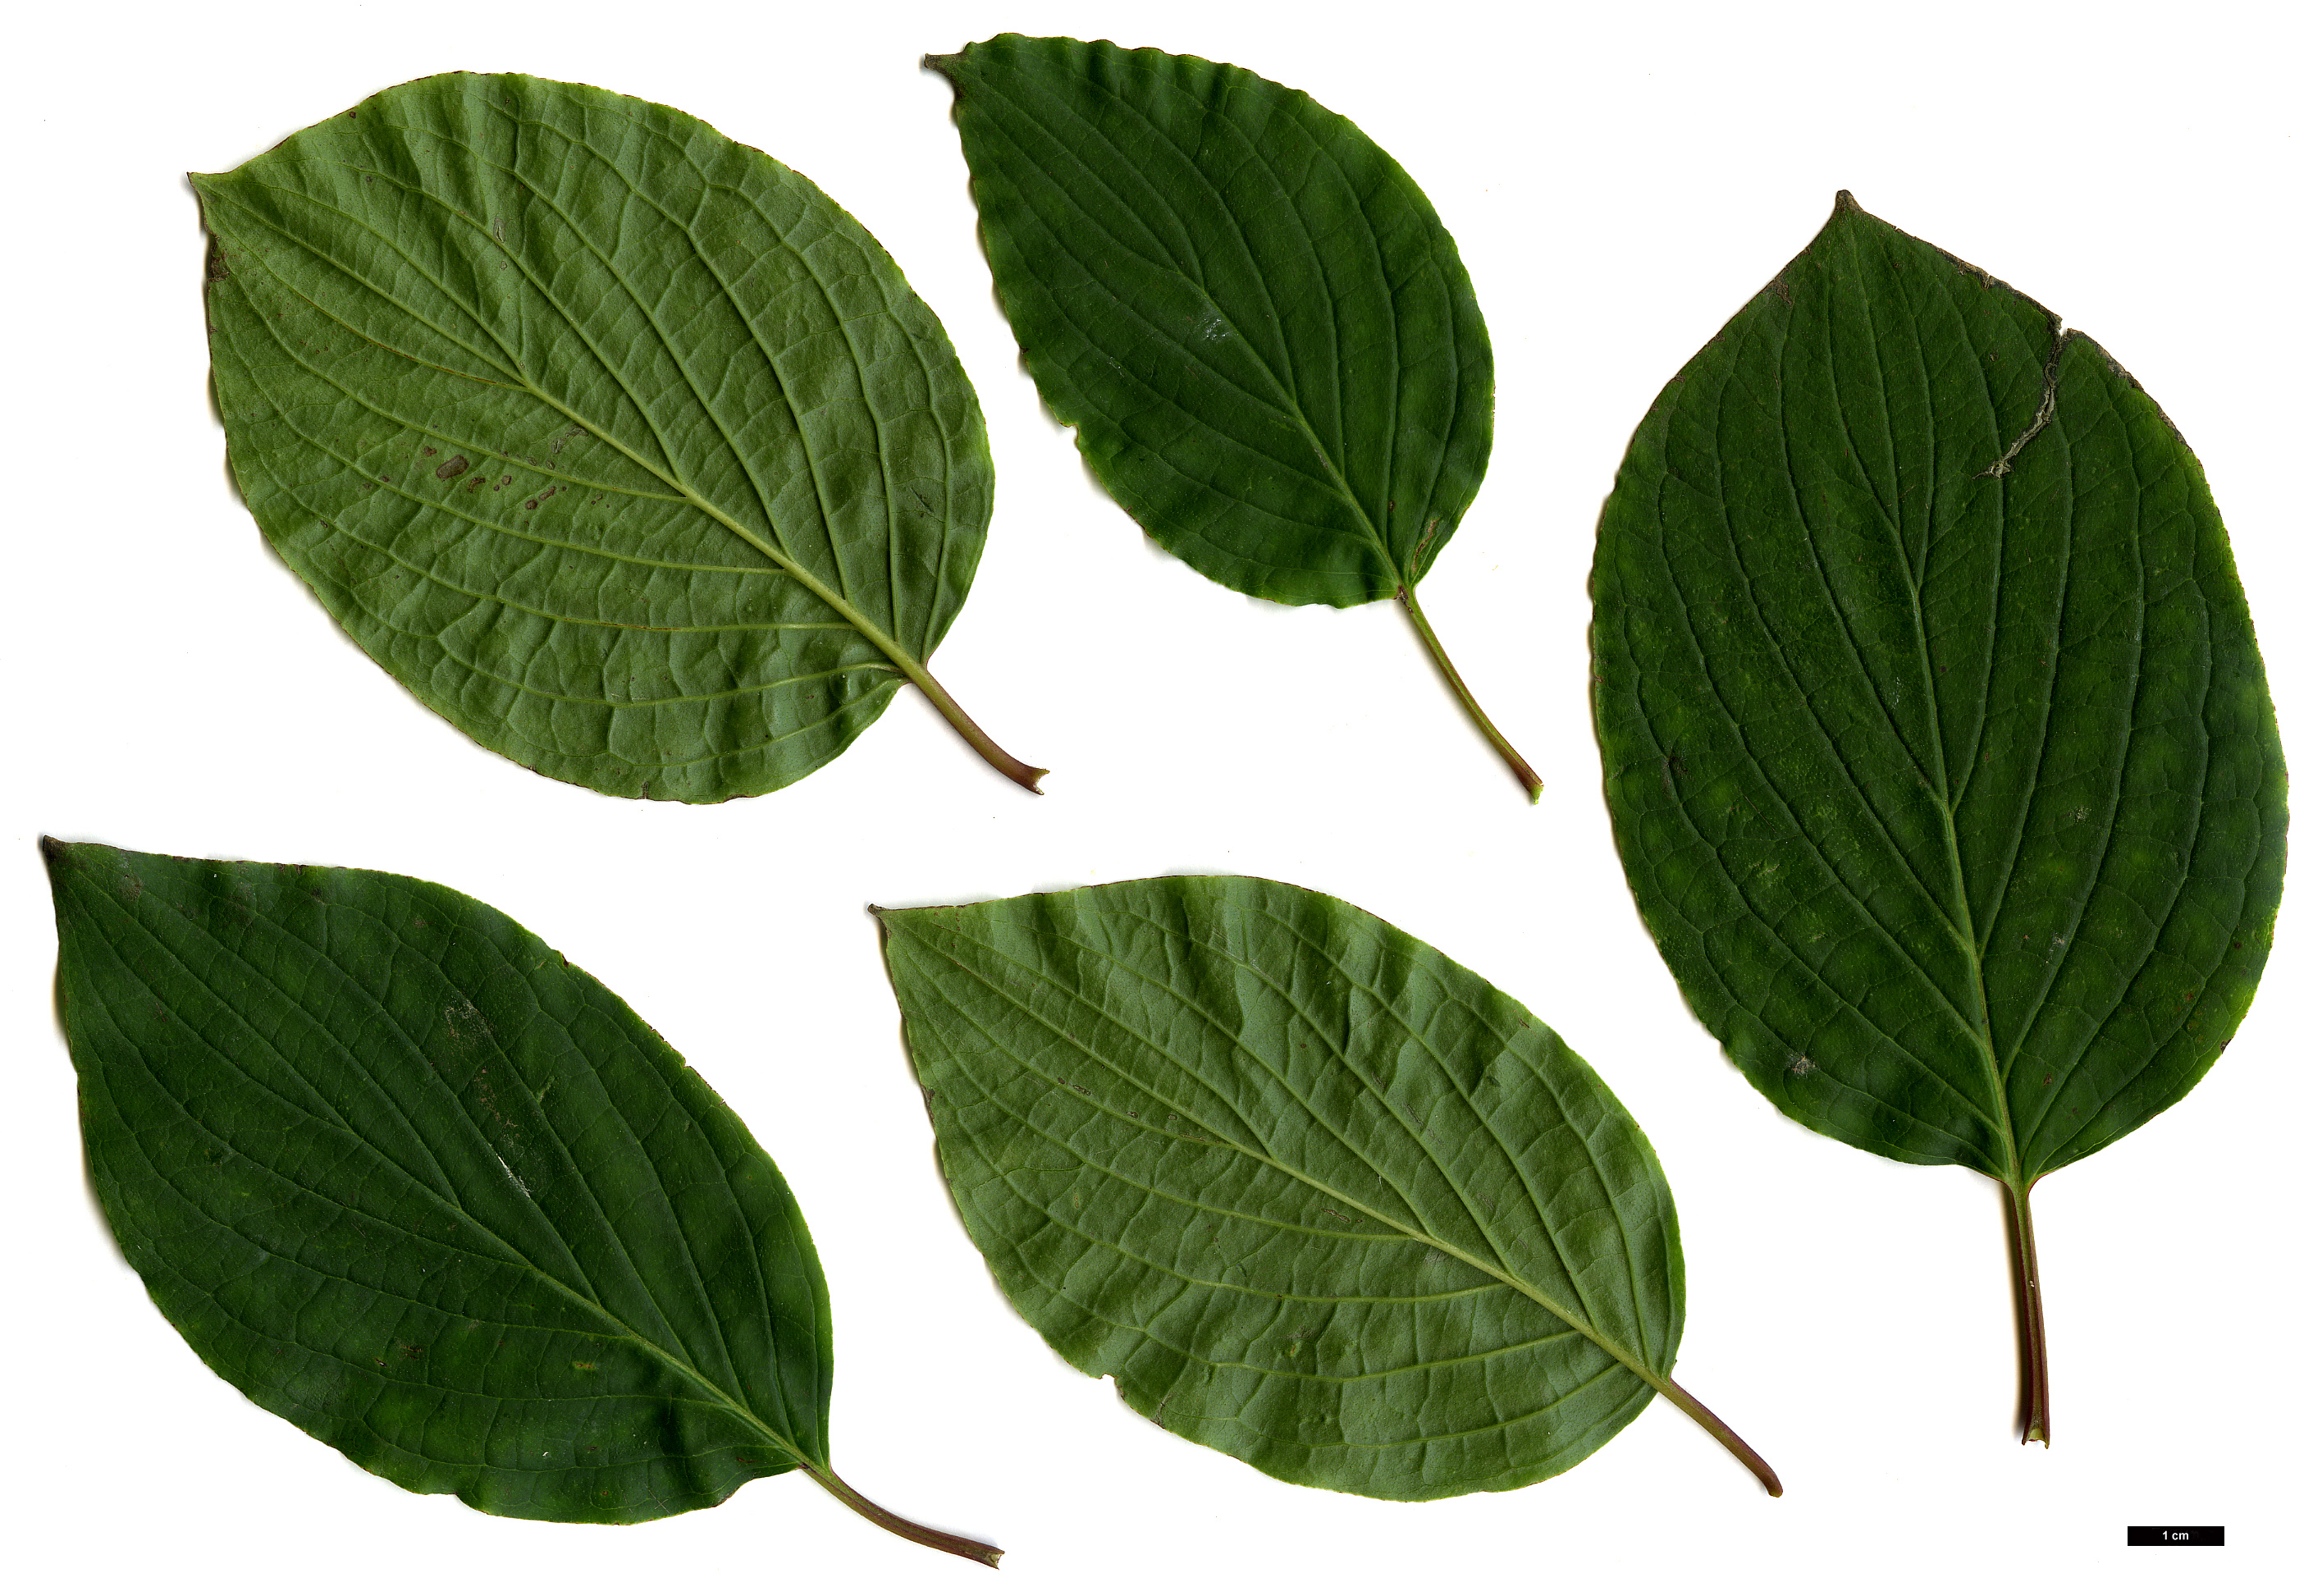 High resolution image: Family: Cornaceae - Genus: Cornus - Taxon: sanguinea - SpeciesSub: subsp. australis